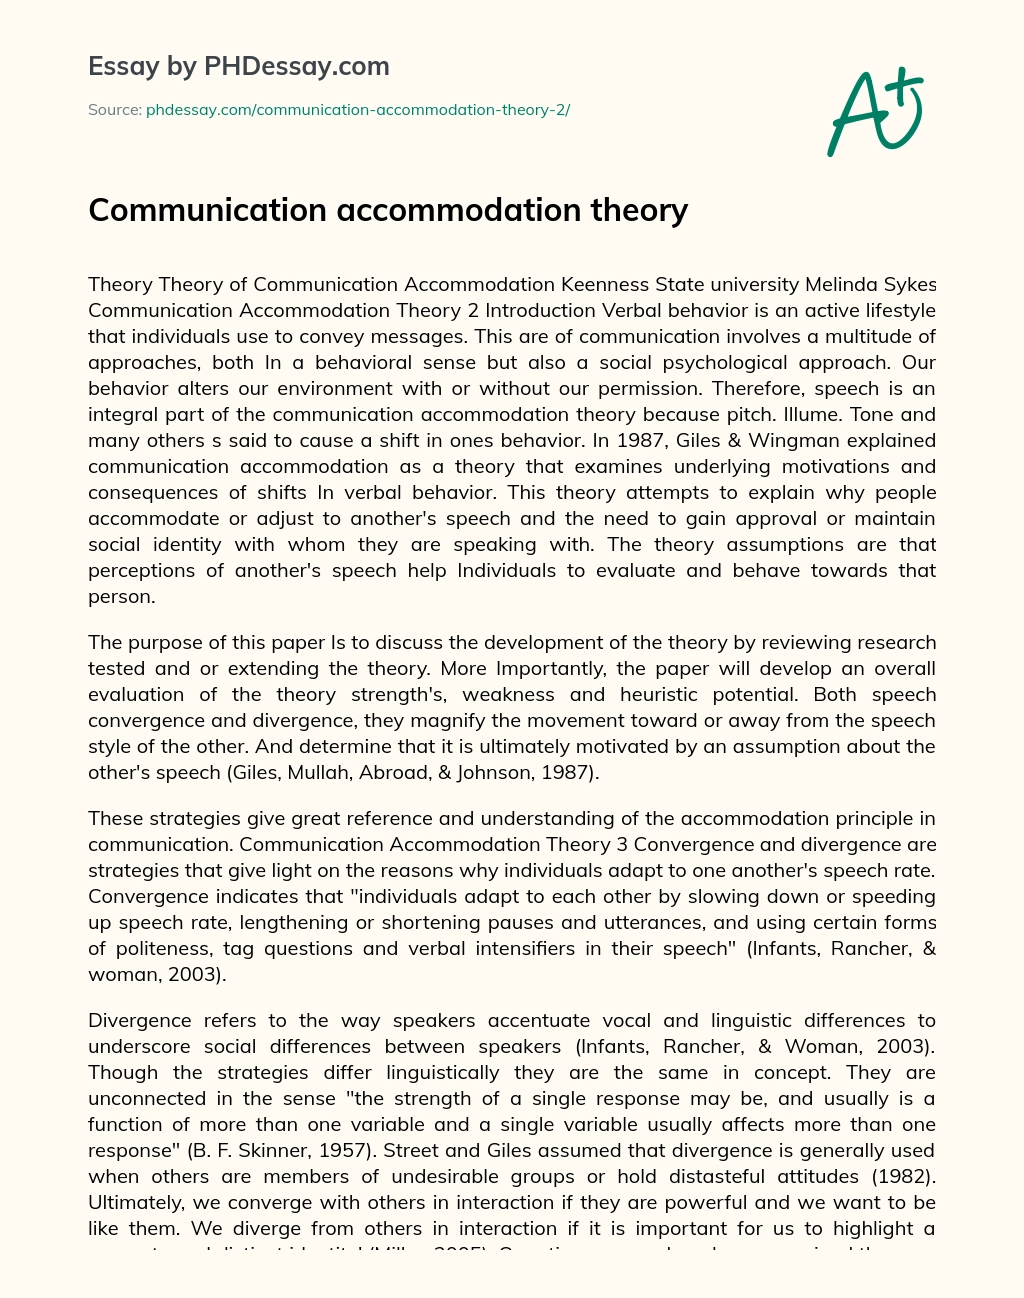 Communication accommodation theory essay